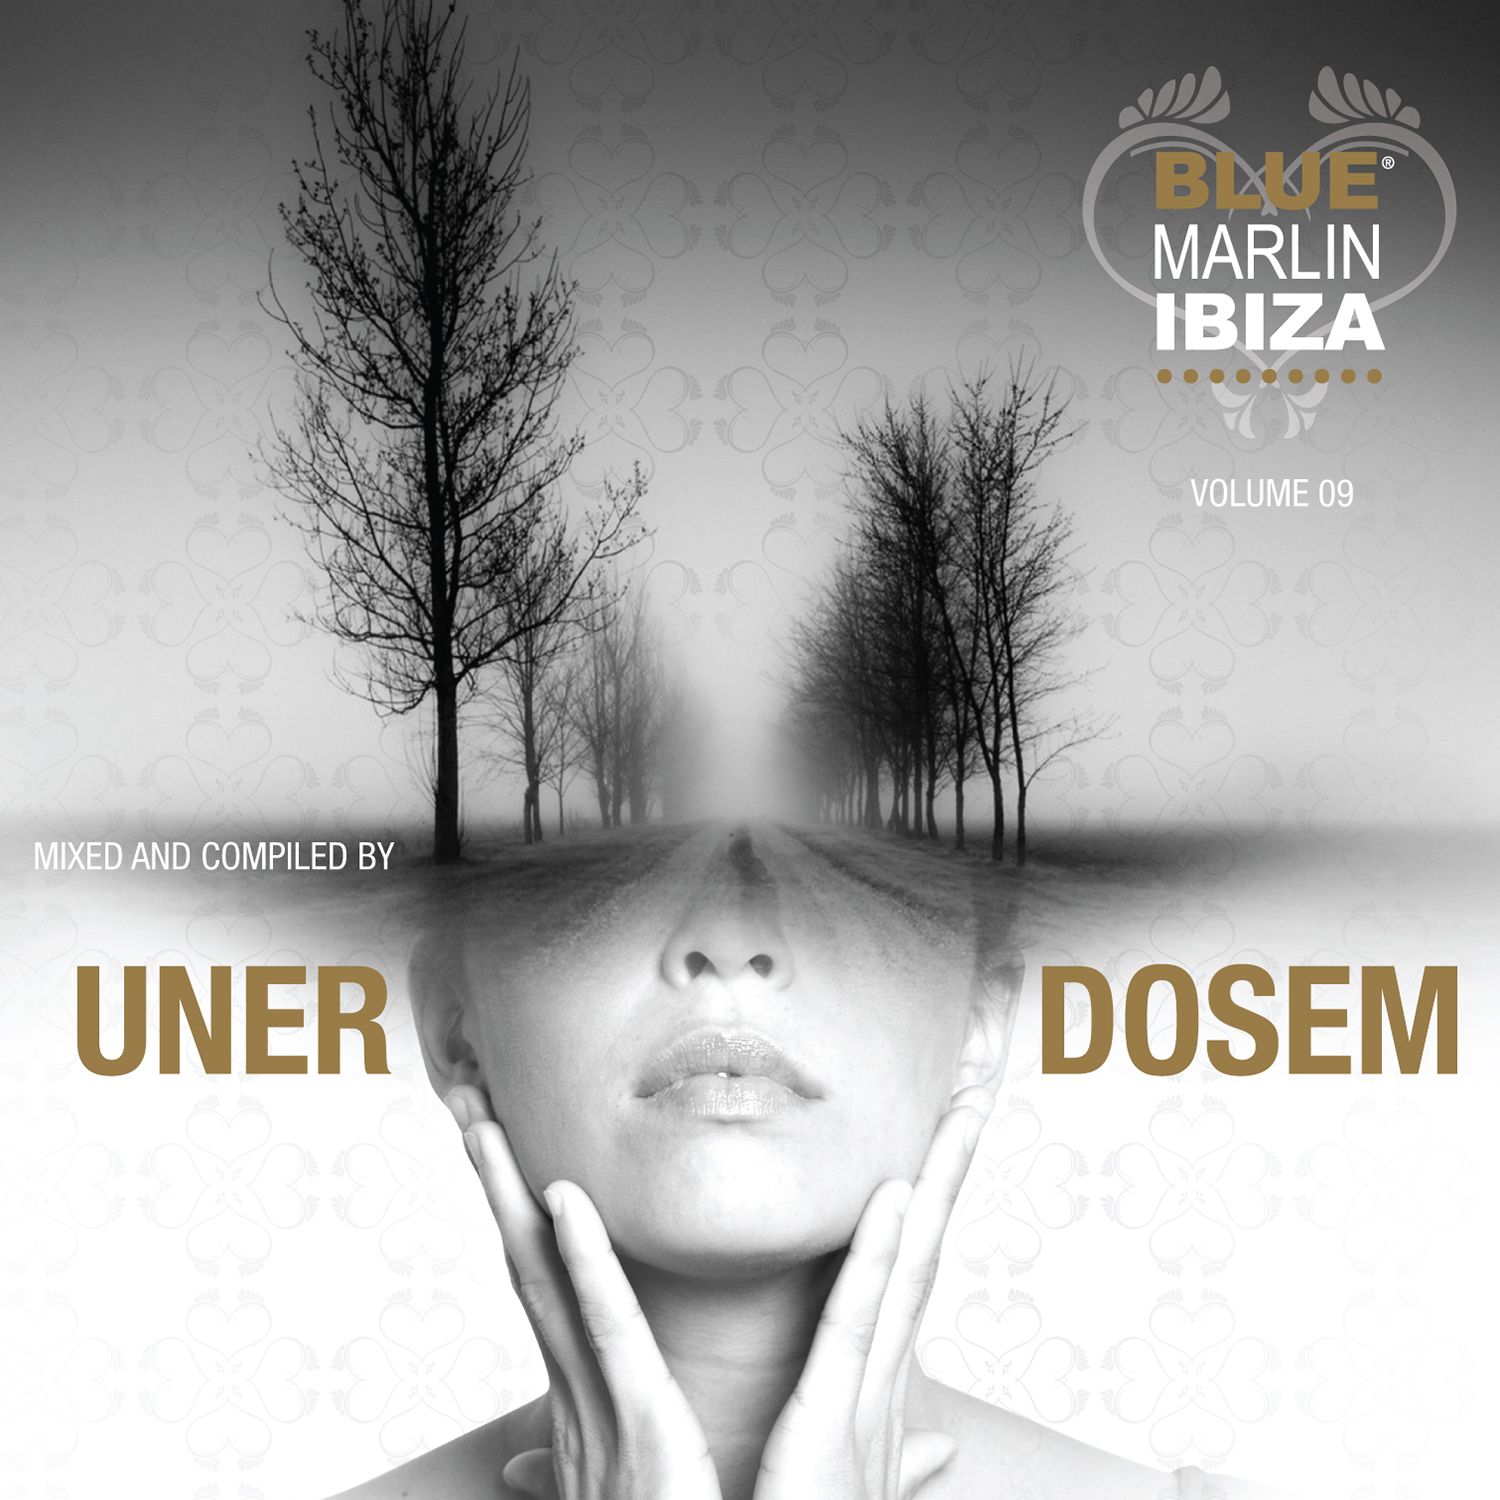 Blue Marlin Ibiza Volume 09 UNER Mix